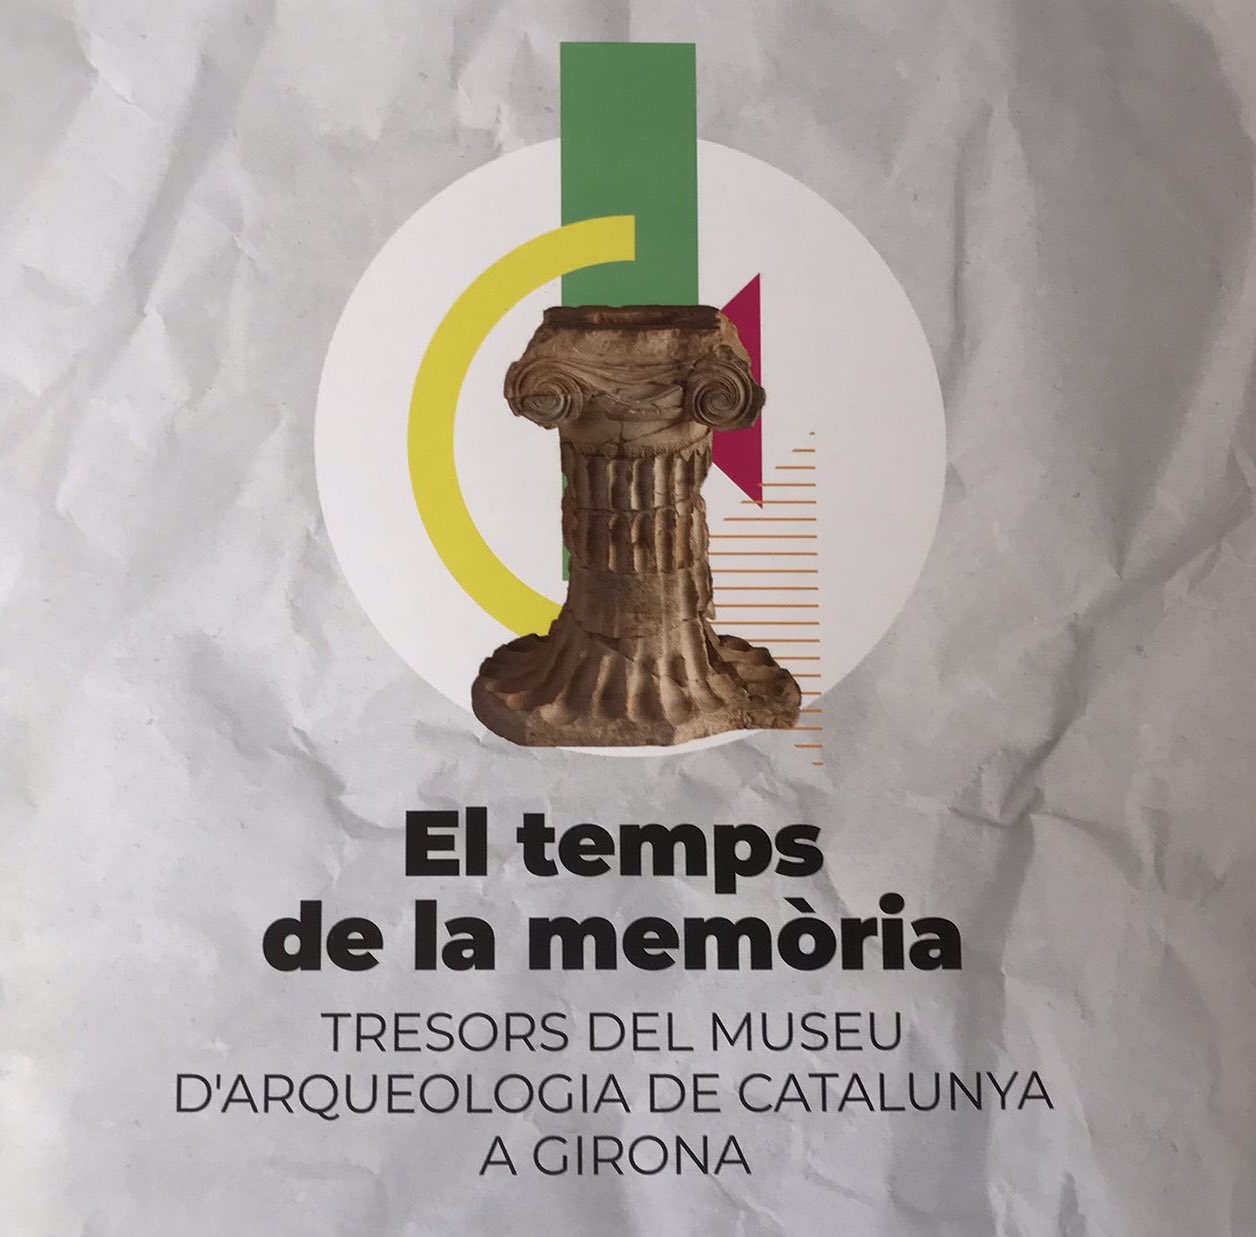 licrpc-participa-en-el-llibre-el-temps-de-la-memoria-tresors-del-museu-darqueologia-de-catalunya-a-girona